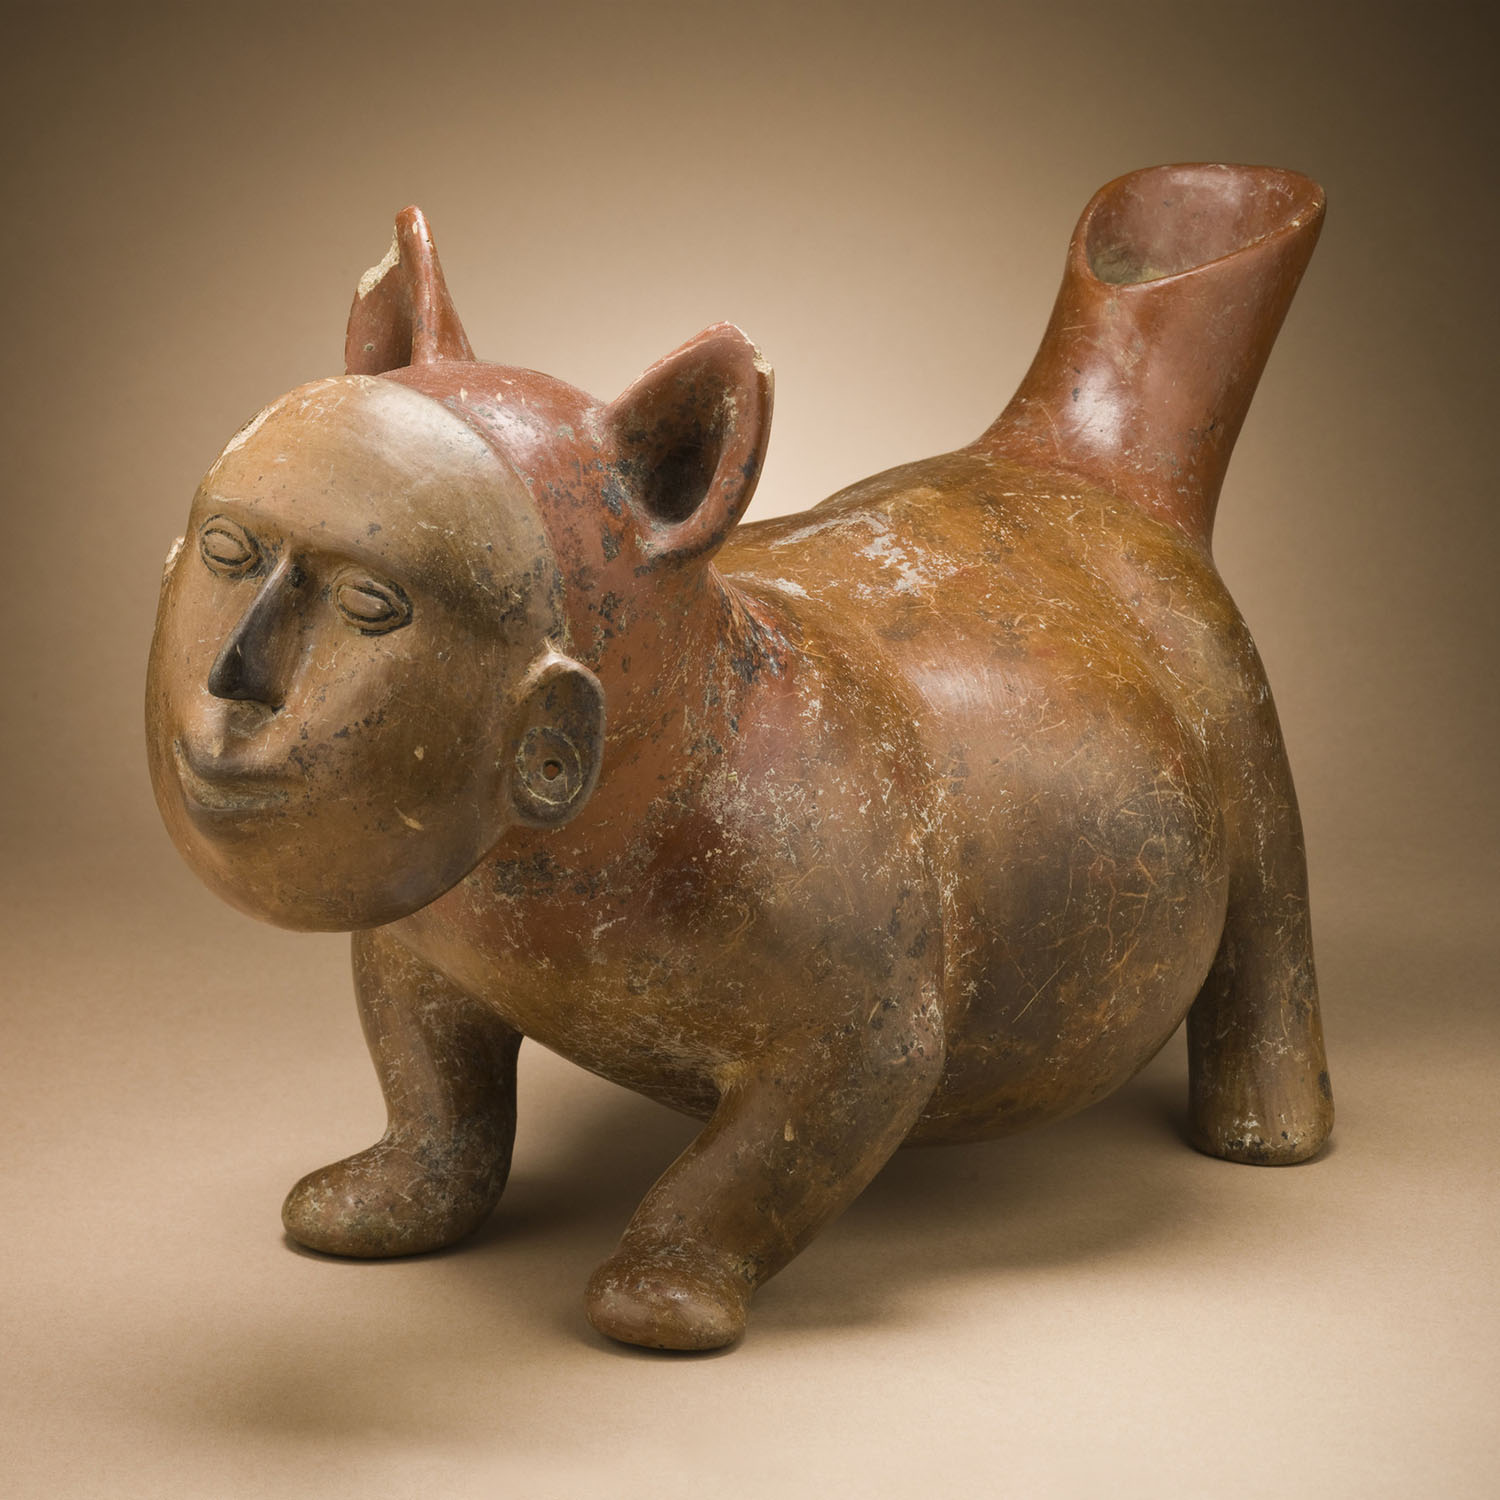 Собака с человеческой маской. Колима, 200 гг. до н.э. – 500 гг. н.э. Коллекция Los Angeles County Museum of Art.